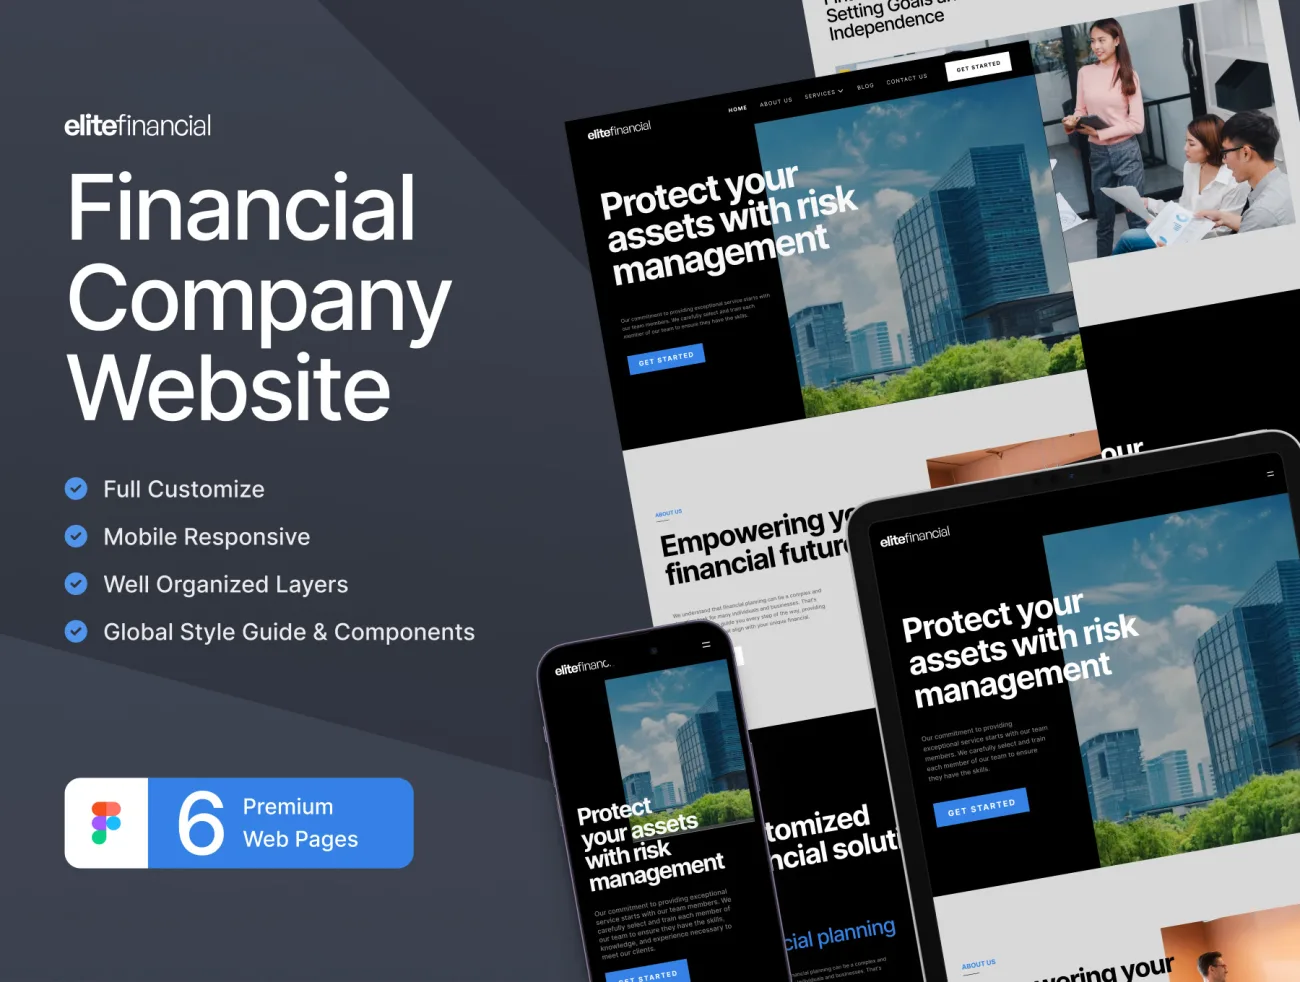 elitefinancial - 金融公司机构官方网站设计模板 elitefinancial - Financial Company Website fimga格式-UI/UX、主页、博客、海报-到位啦UI